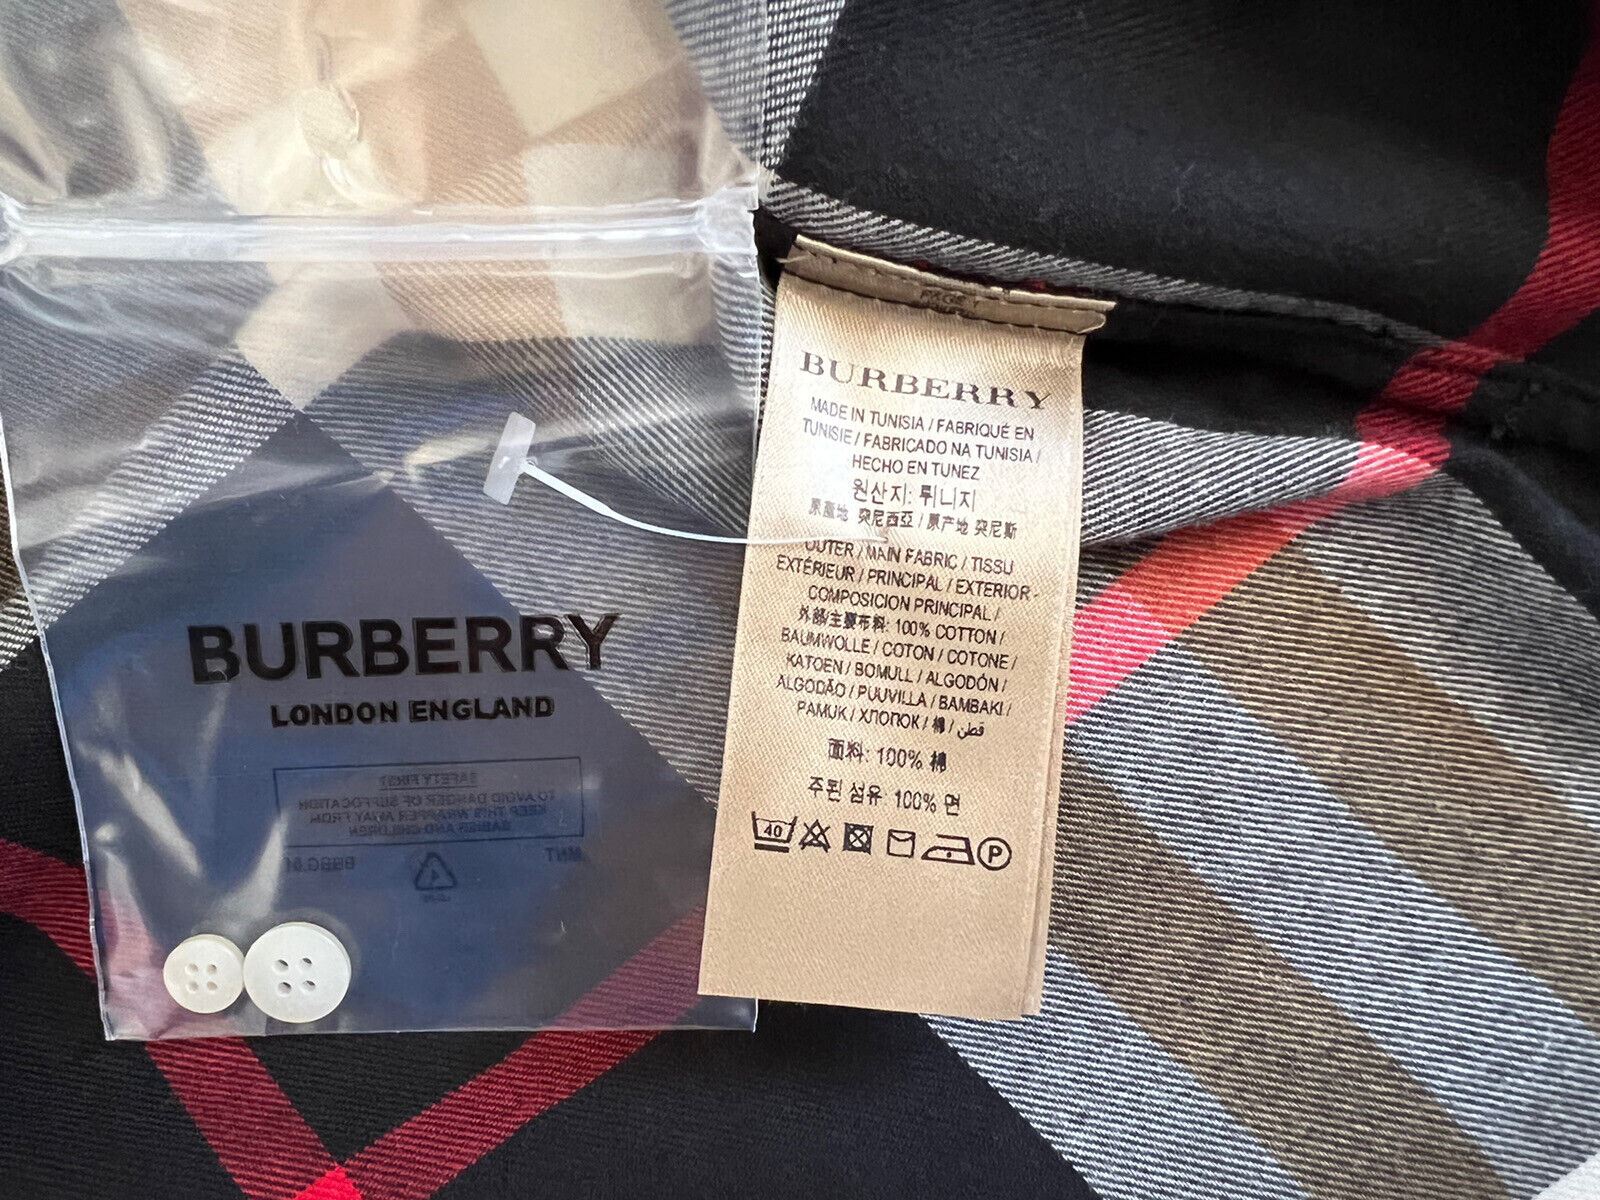 Neu mit Etikett: 390 $ Burberry Herren-Hemd mit Knopfleiste, schwarz kariert, Baumwolle, 2XL